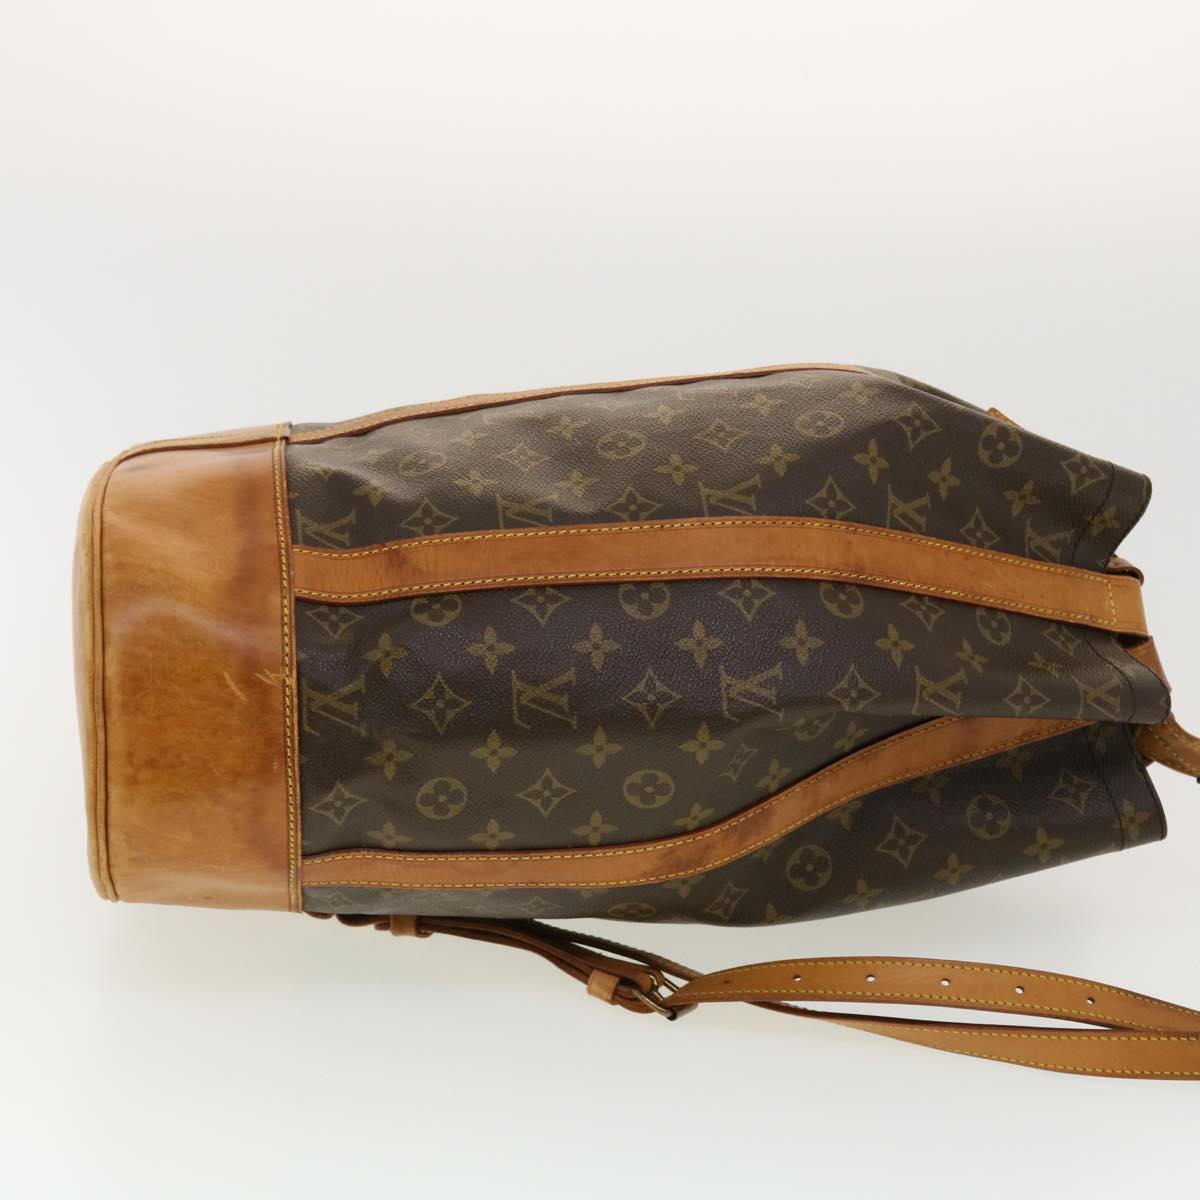 LOUIS VUITTON LV Randonnee GM Shoulder Bag Monogram Leather Brown M42244  75RC571